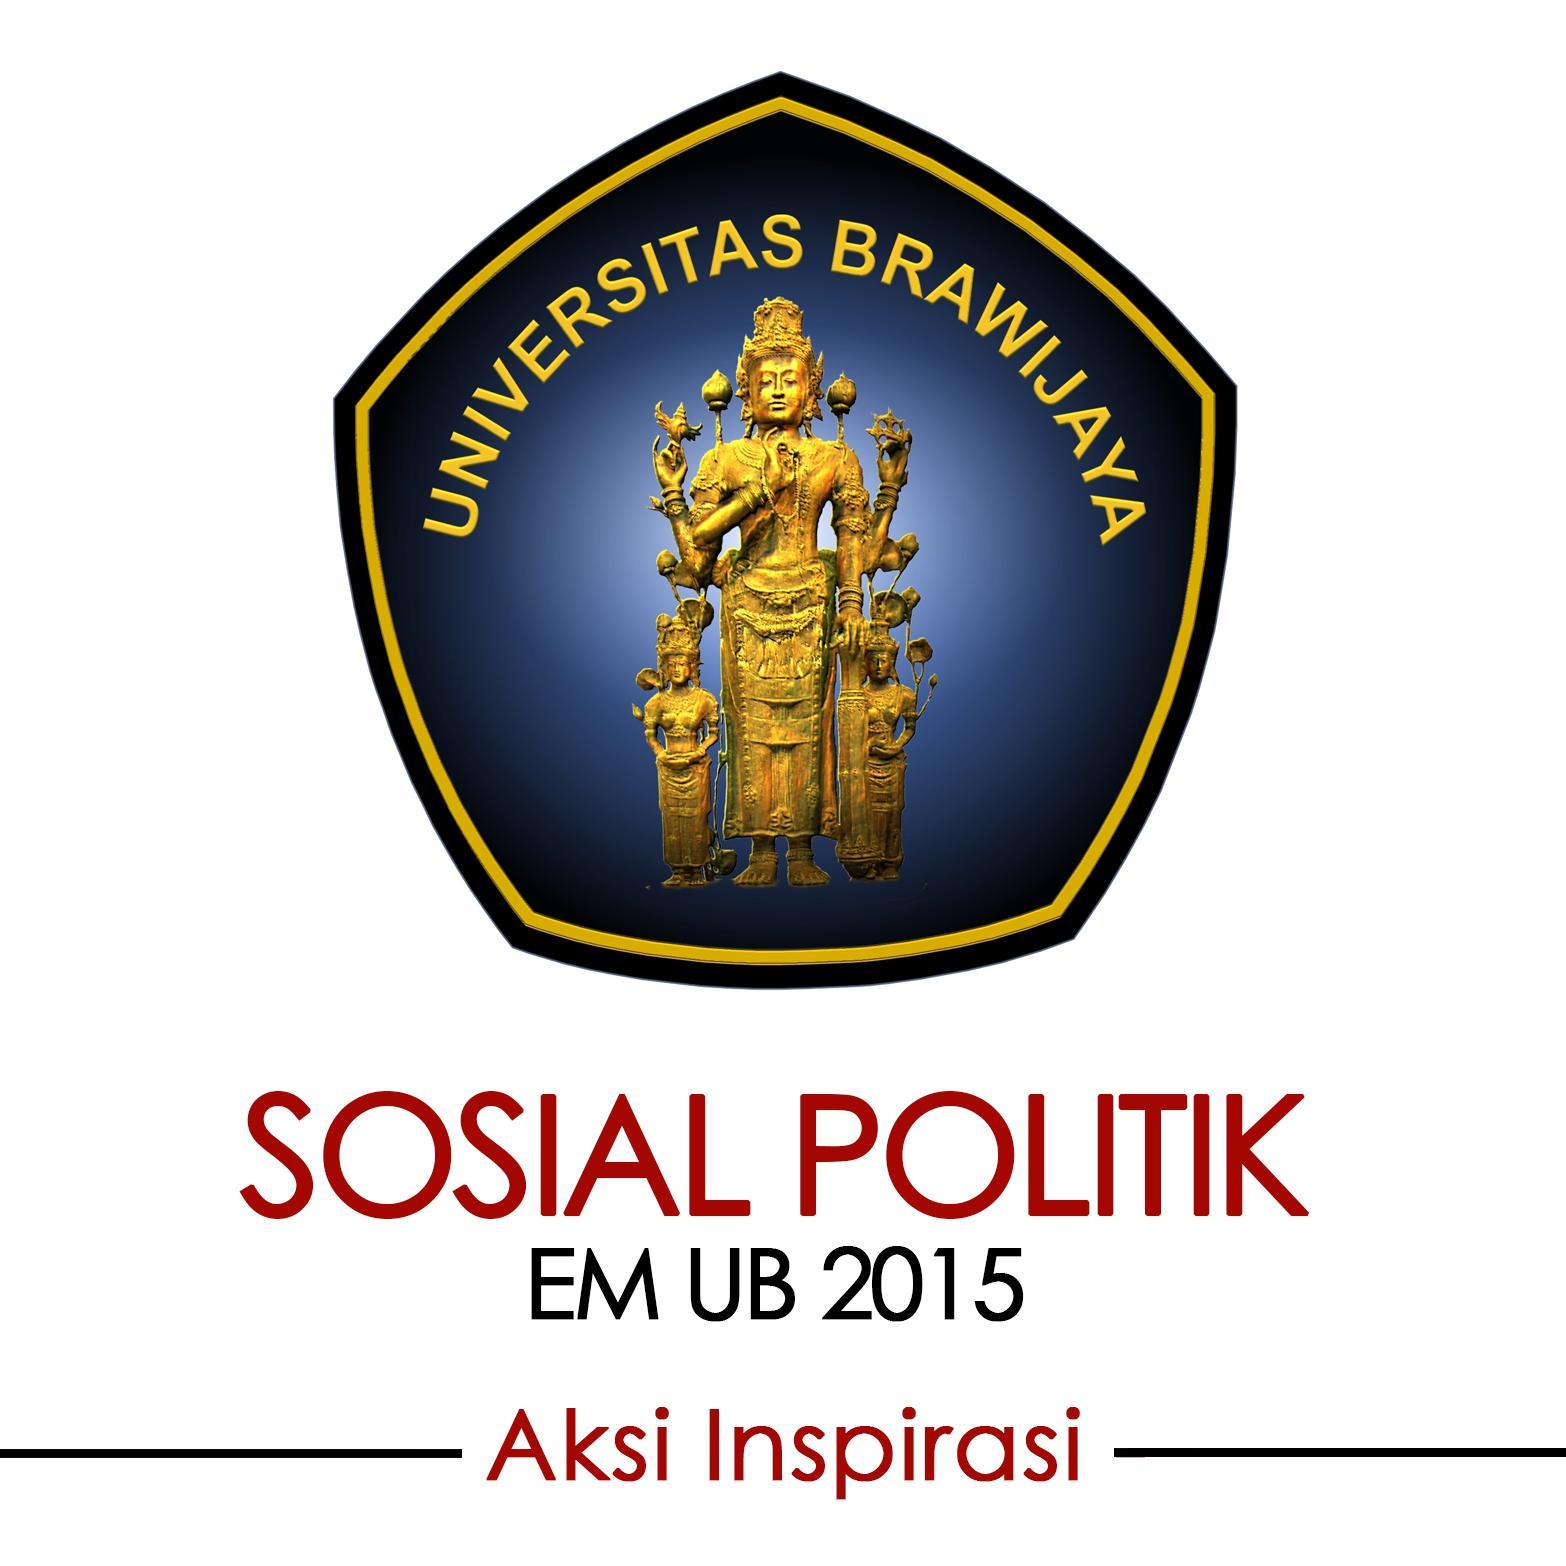 Kanal Resmi Sosial Politik | EM UB 2015 #AksiInspirasi | Email: eksekutifmahasiswa.2015@gmail.com